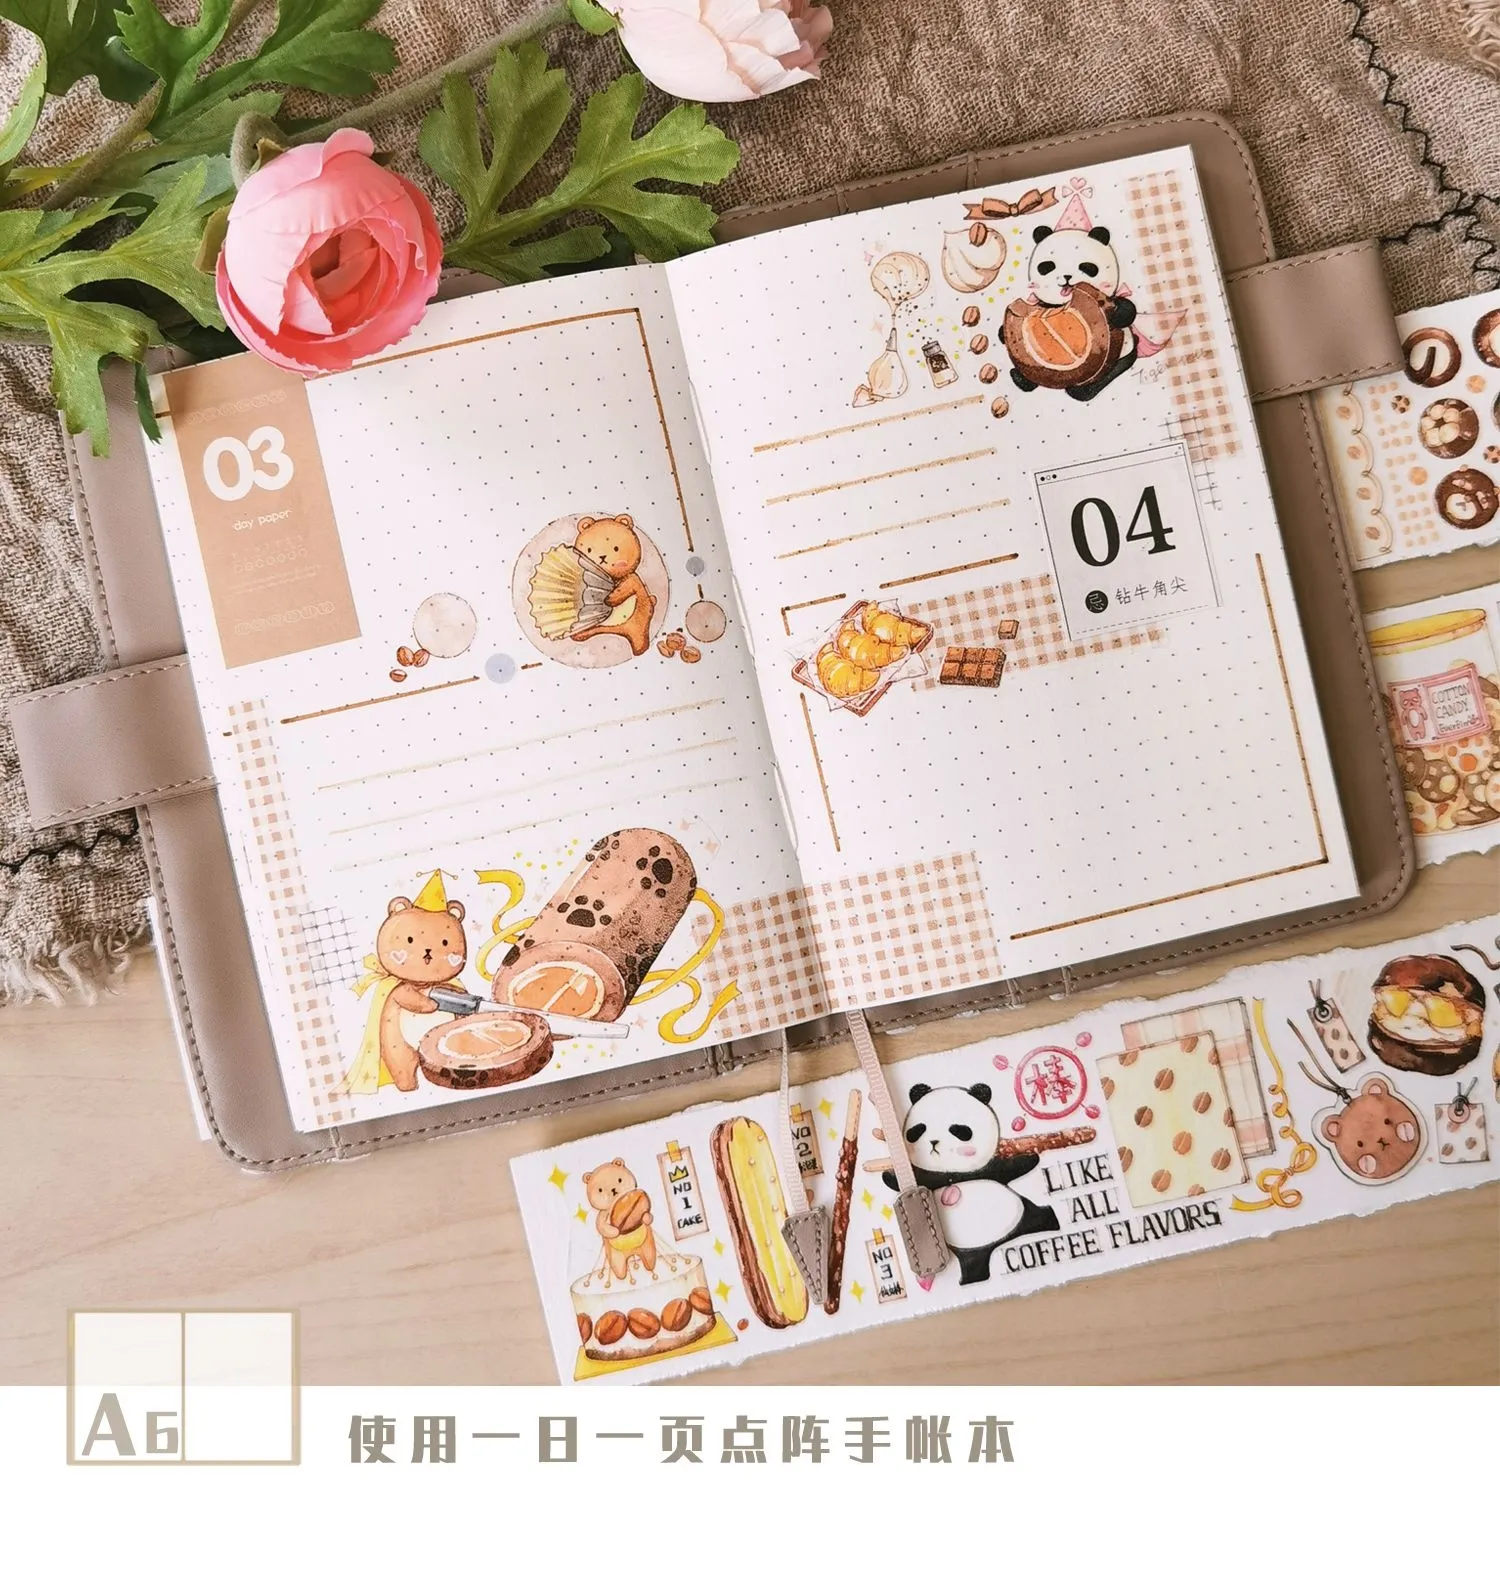 Hot Koop Nieuwe Stijl Voor Scrapbook En Note Boek Schema Decoratie Washi Sticker Cartoon Washi Tape